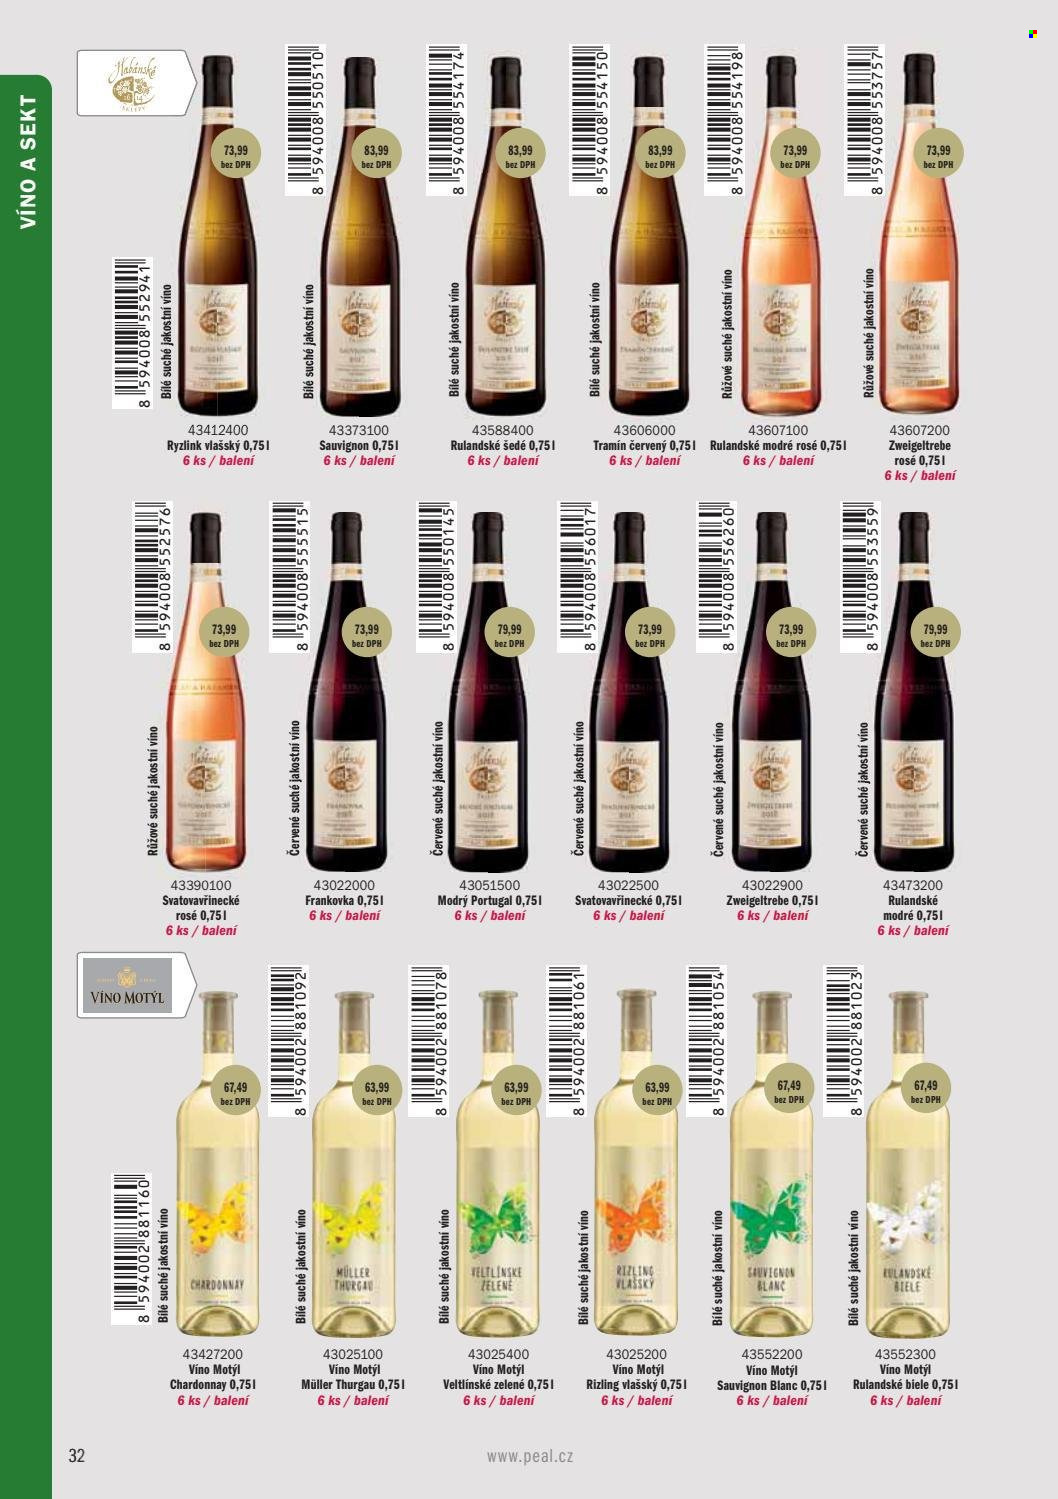 Leták PEAL - Produkty v akci - alkohol, sekt, Rulandské šedé, Ryzlink vlašský, Tramín červený, Chardonnay, Müller Thurgau, Rulandské modré, růžové víno, Svatovavřinecké, víno, Frankovka, Zweigeltrebe, Modrý Portugal, Veltlínské zelené, Sauvignon Blanc, Víno Motýl. Strana 34.